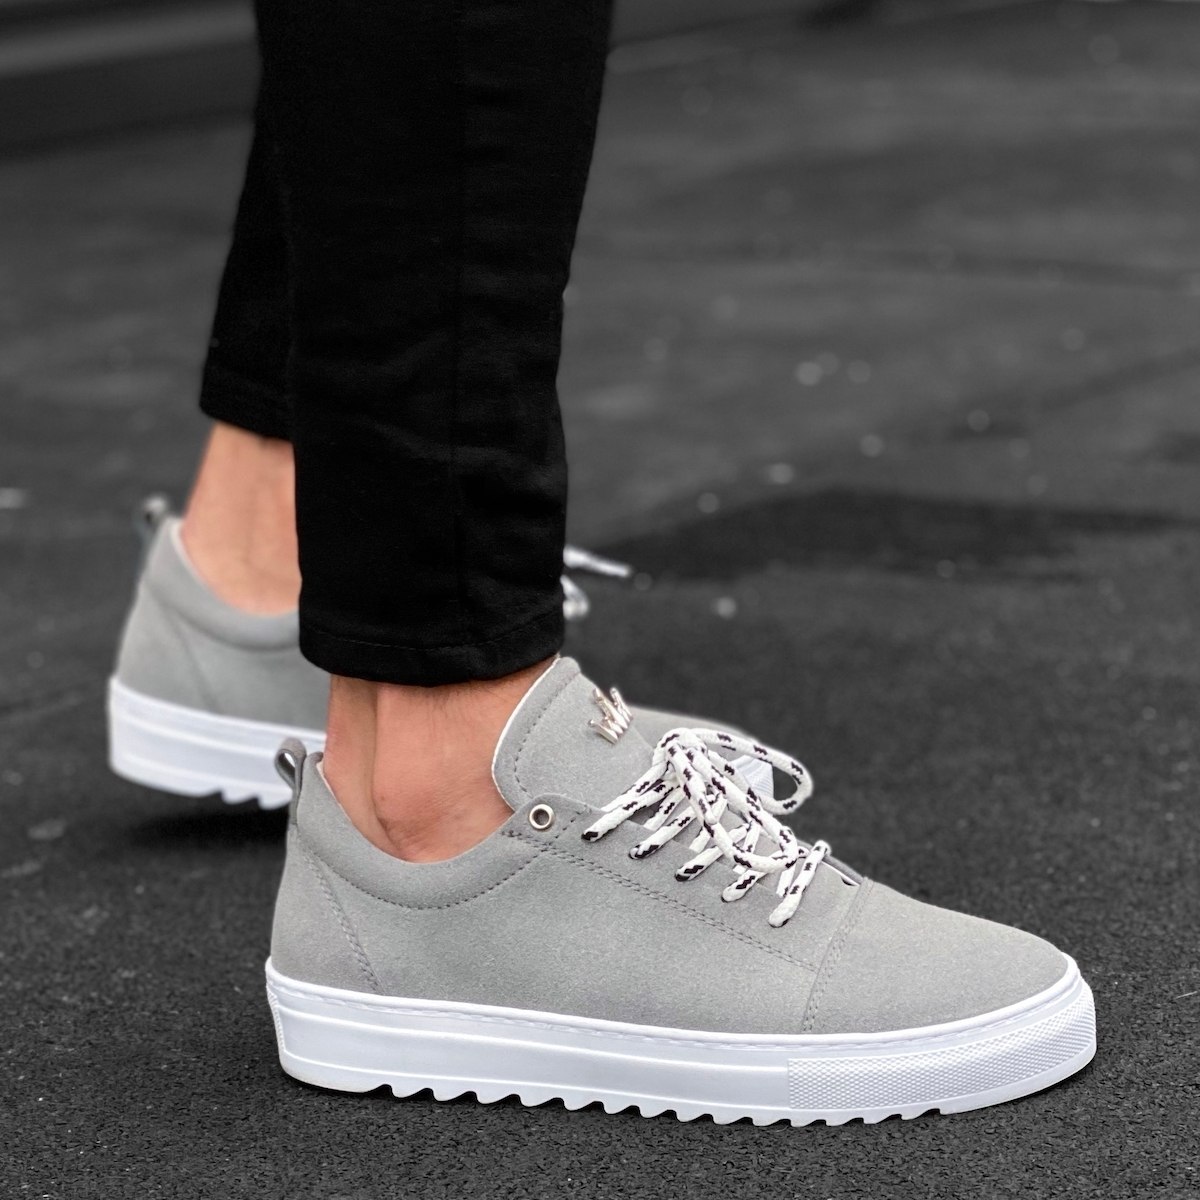 Men’s Low Top Suede Sneakers Shoes Grey | Martin Valen